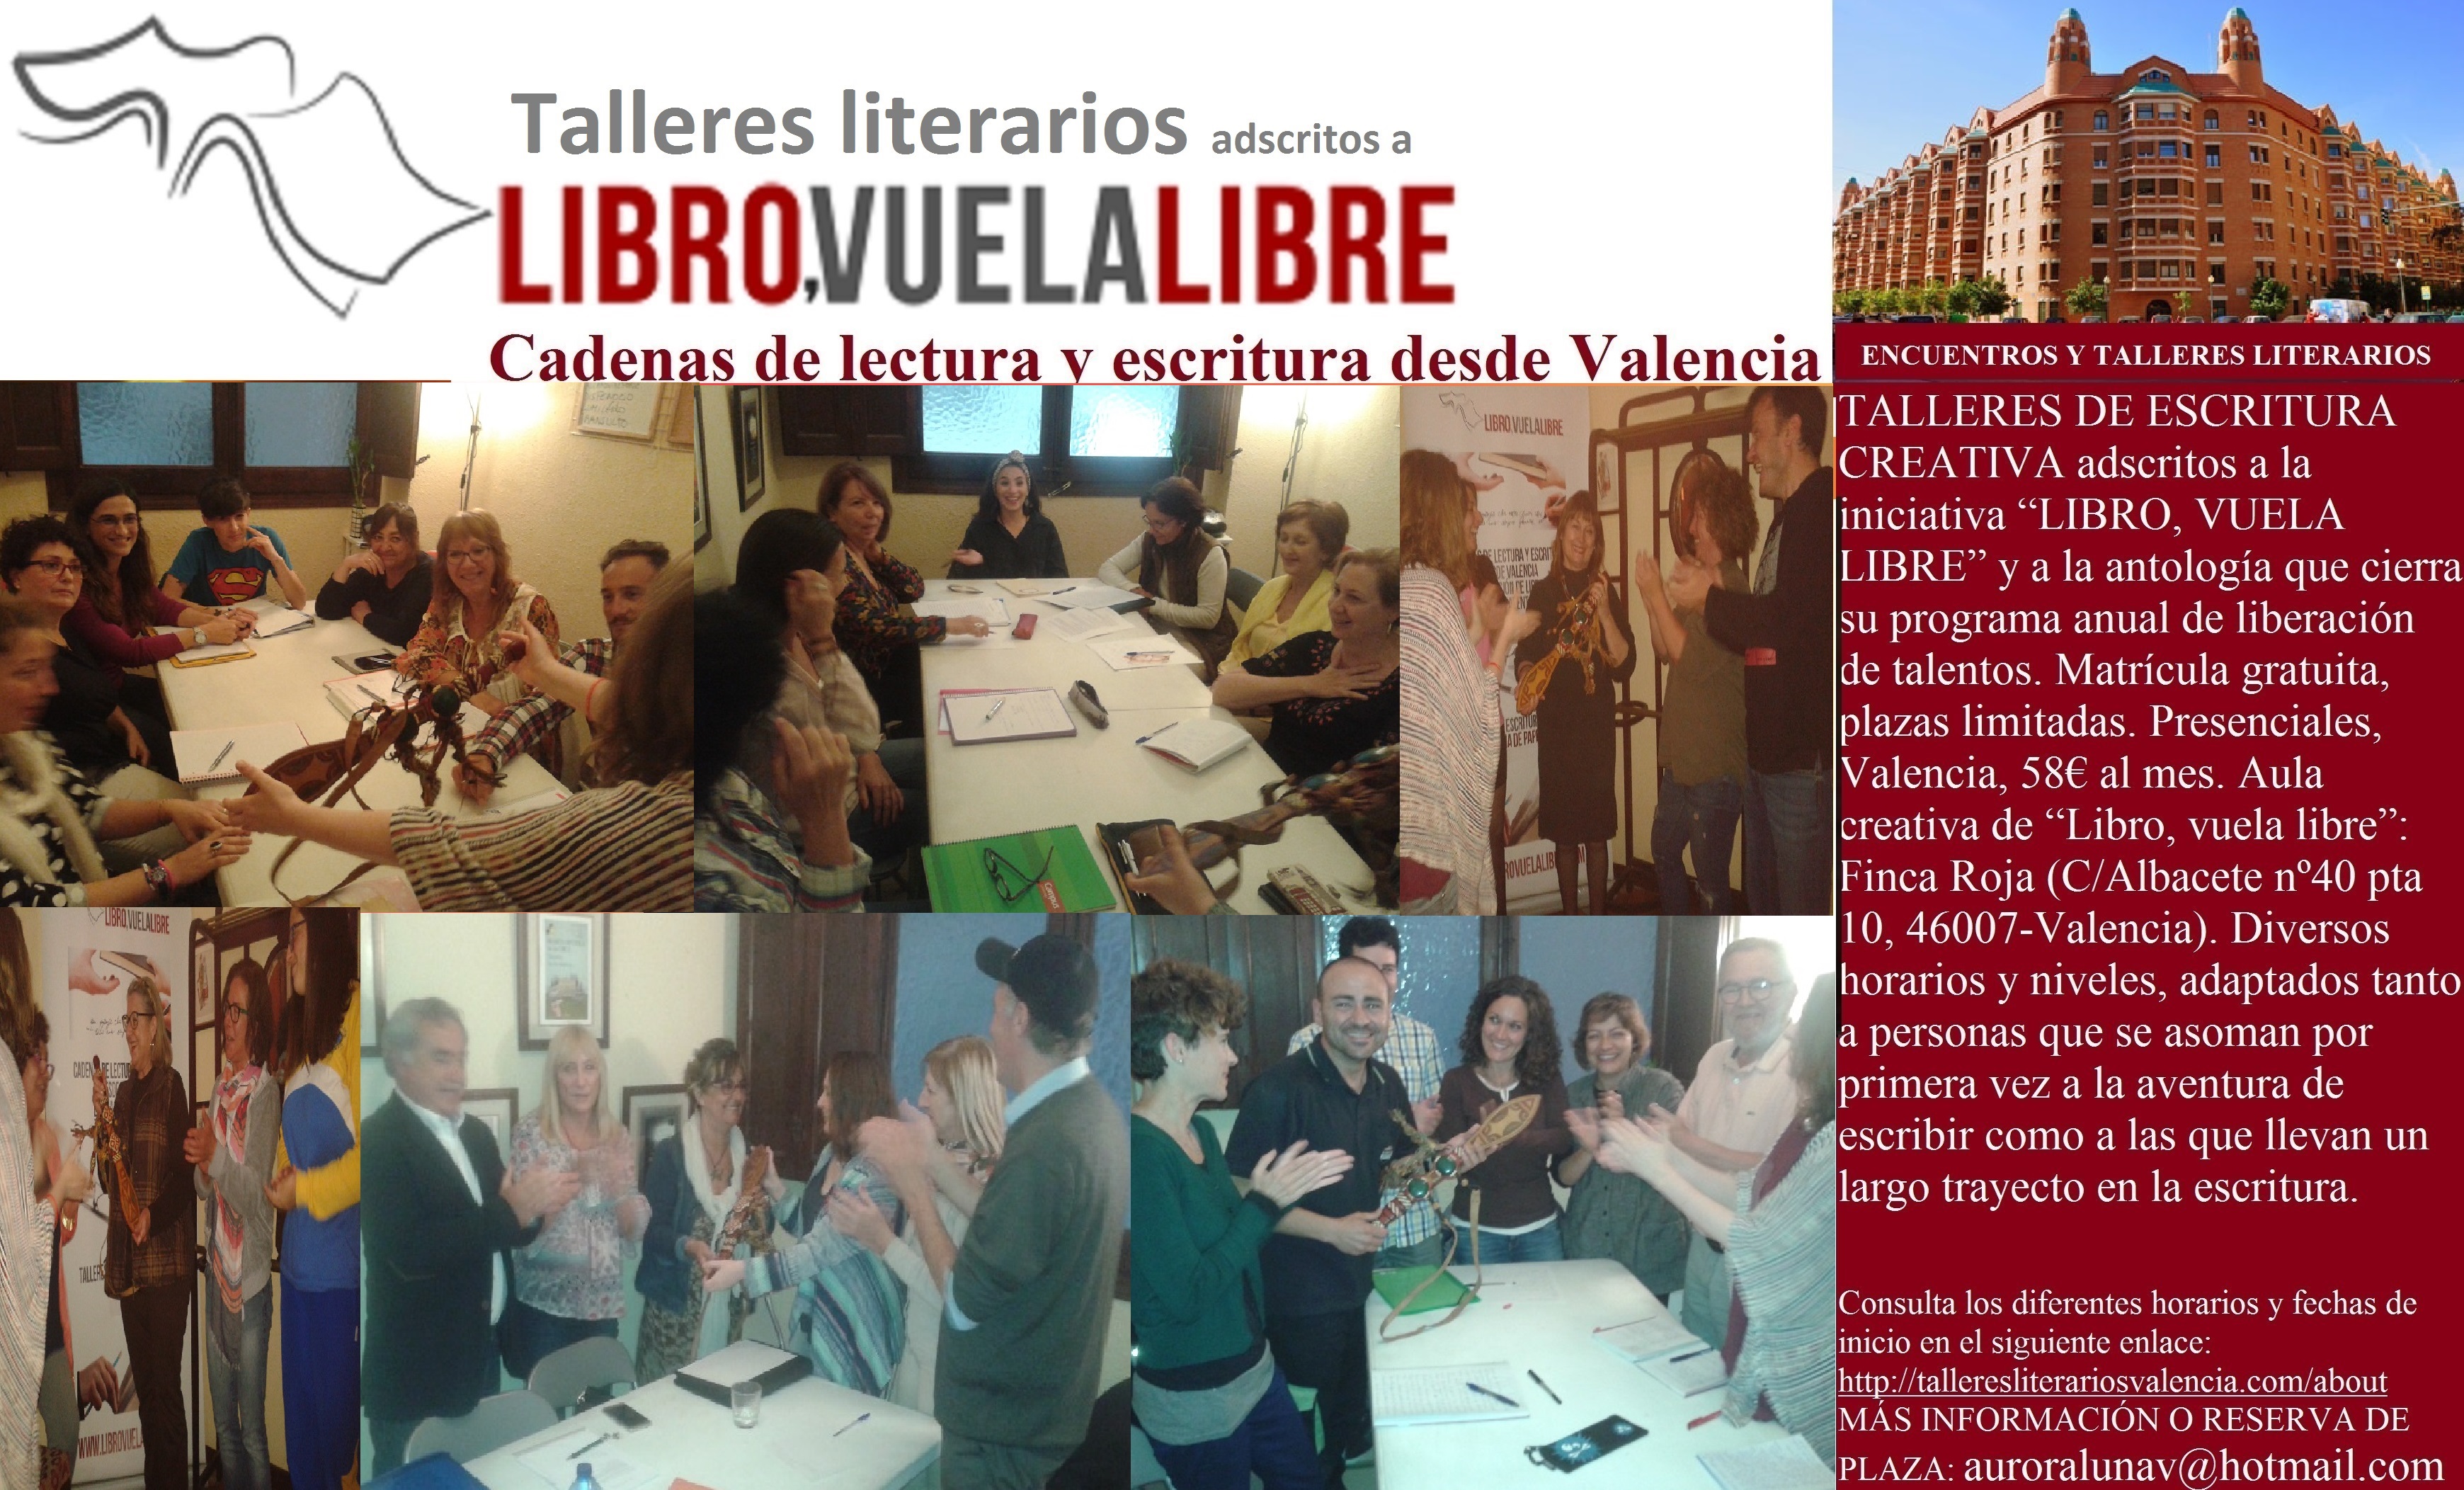 Premios literarios taller de escritura Valencia